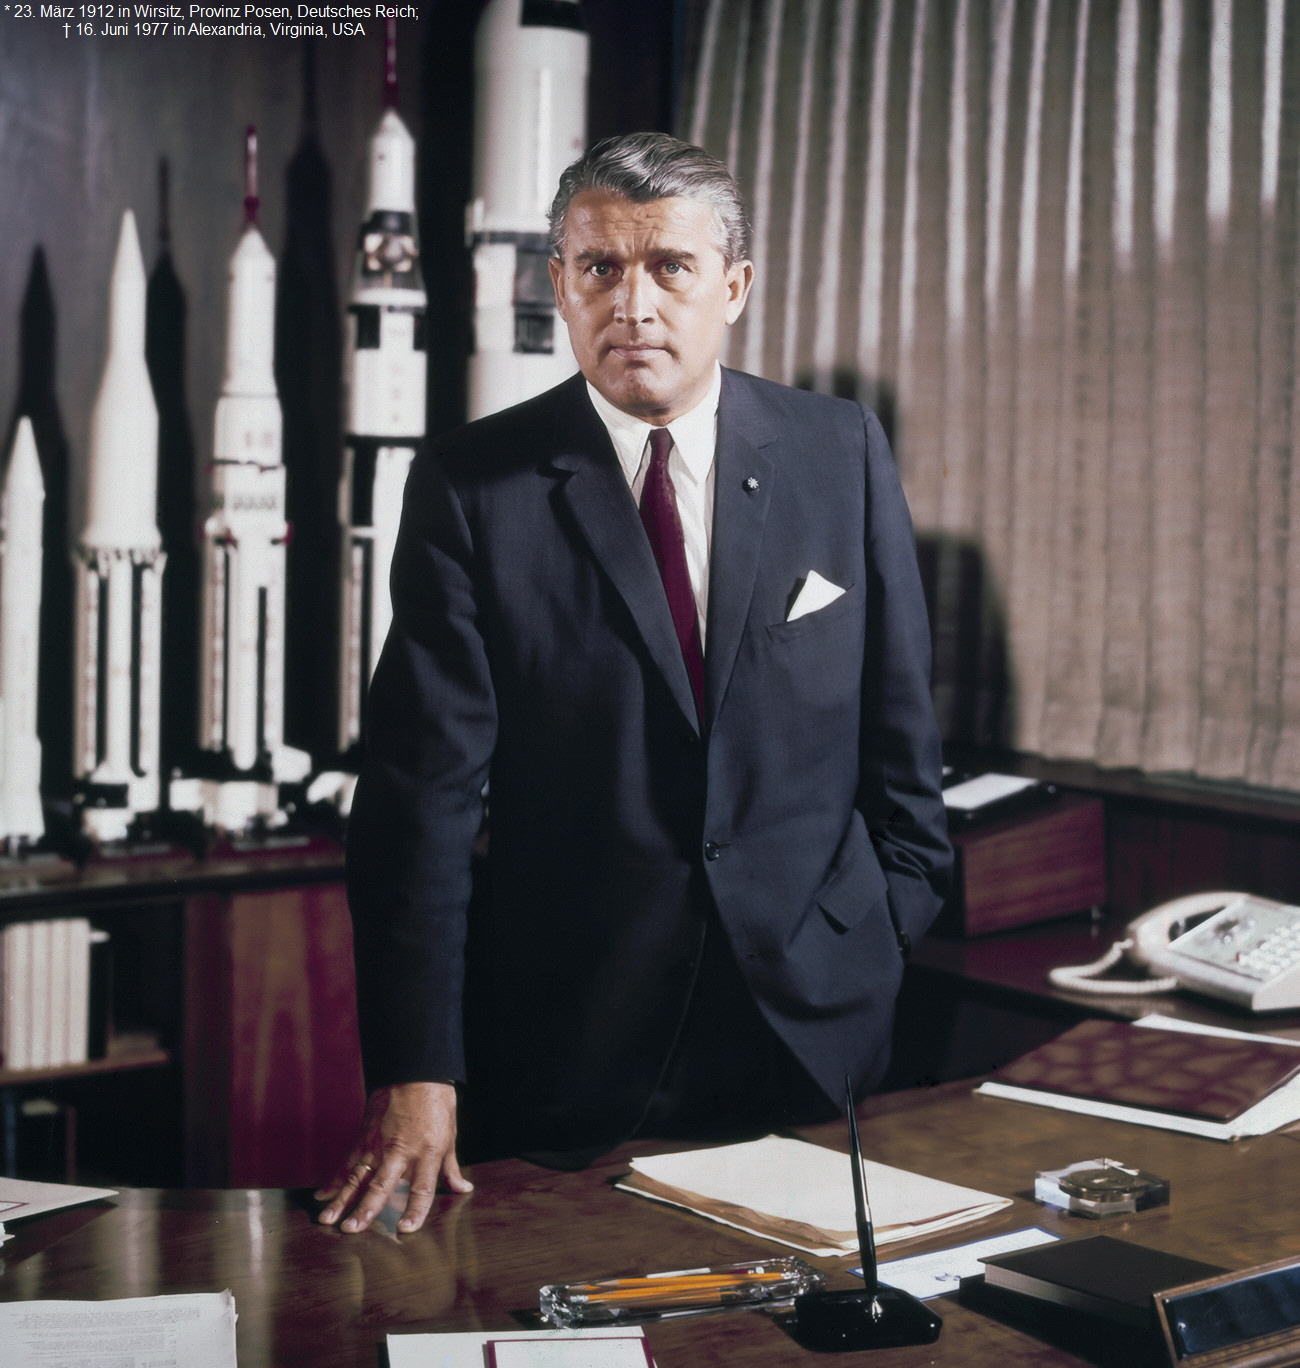 V2 Rakete - Wernher von Braun